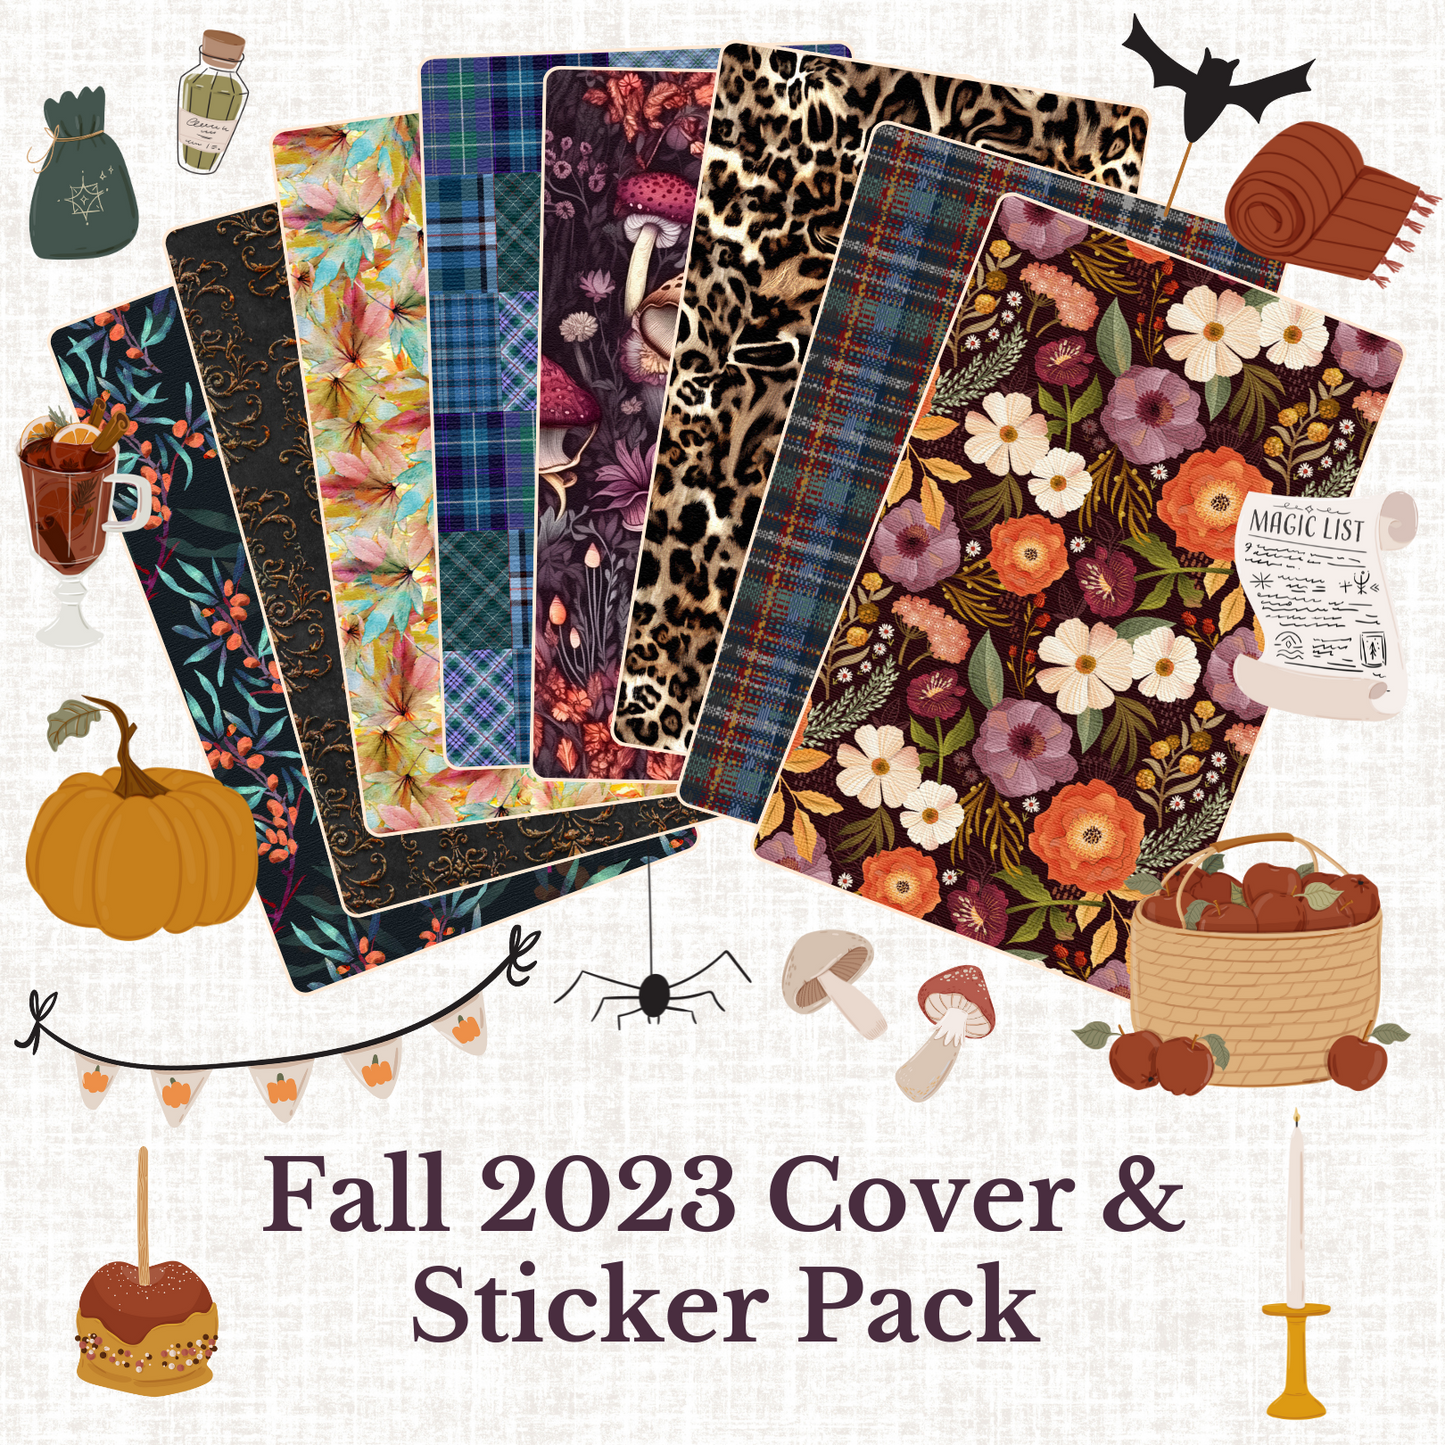 "Artful Fall 2023" Cover & Sticker Pack